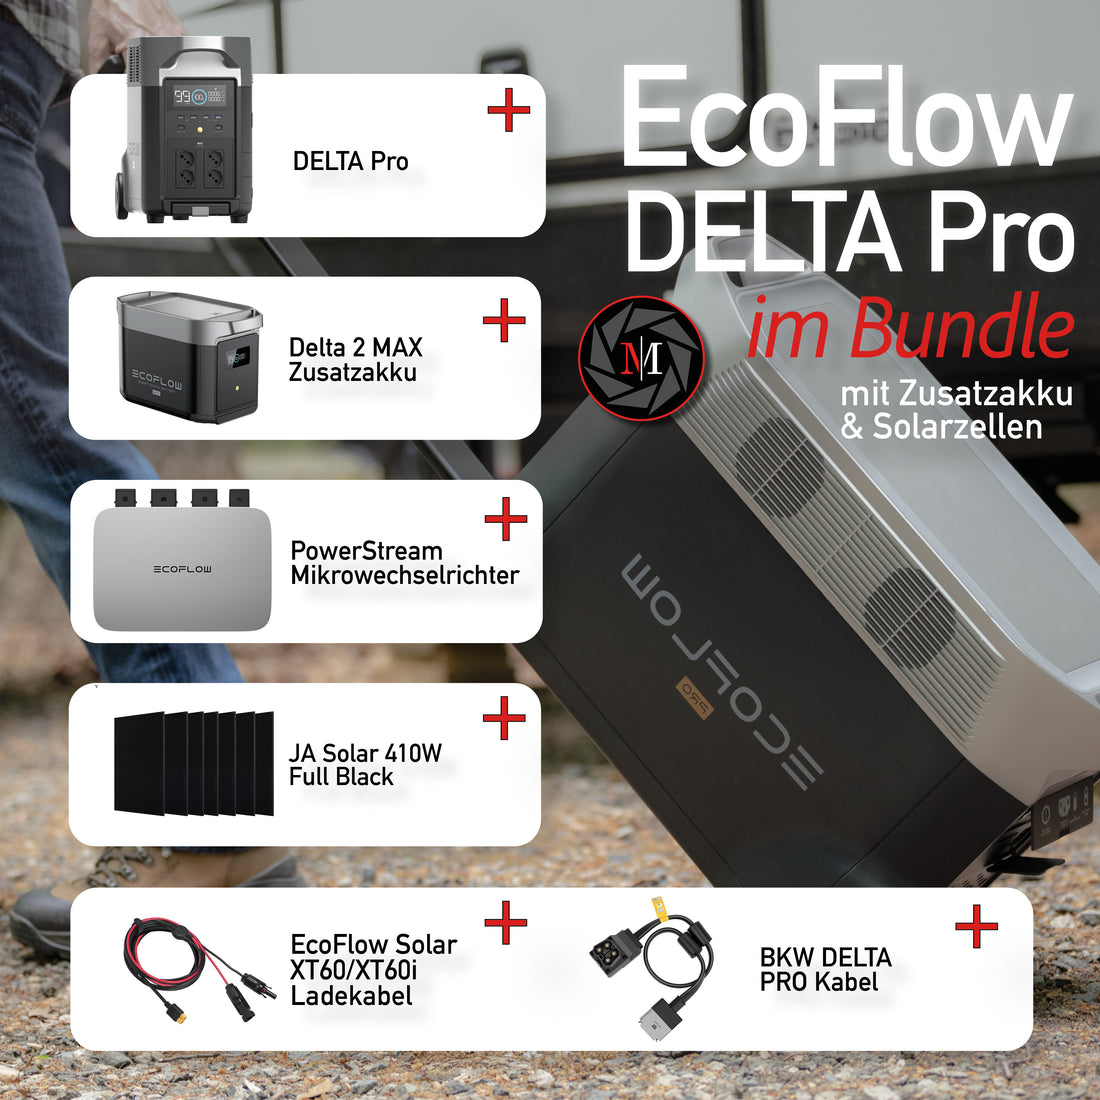 EcoFlow Delta Pro 7,2 kWh Solarbundle Set (Delta Pro + Delta Pro Zusatzakku + Powerstream + BKW-Delta Pro Kabel + 1-6x 410W Solarpanel + XT60 Solarkabel)